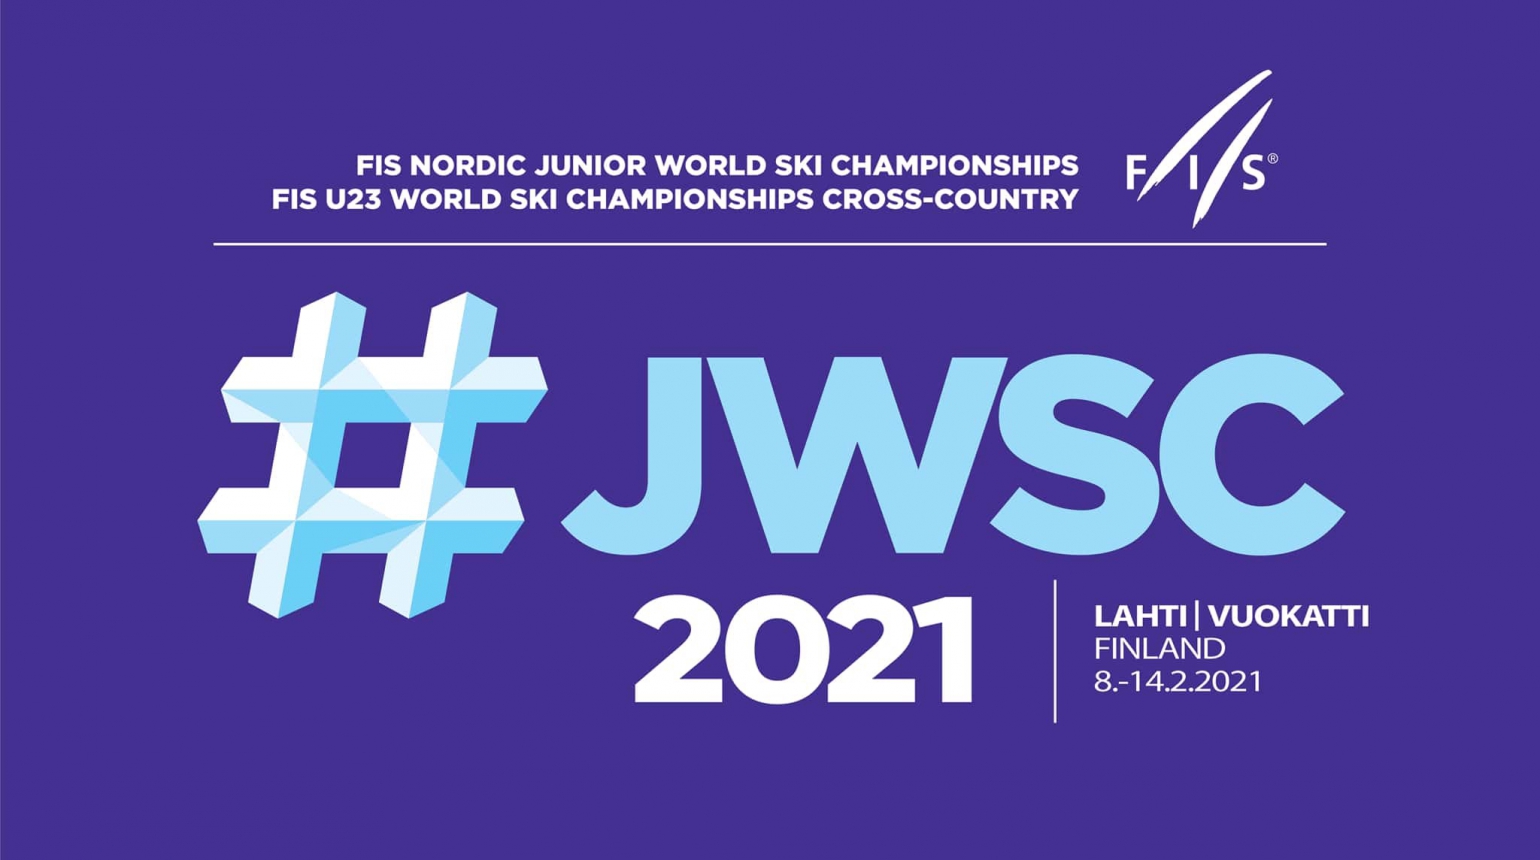 Mistrovství světa juniorů v Lahti se zúčastní sedm českých skokanů a skokanek